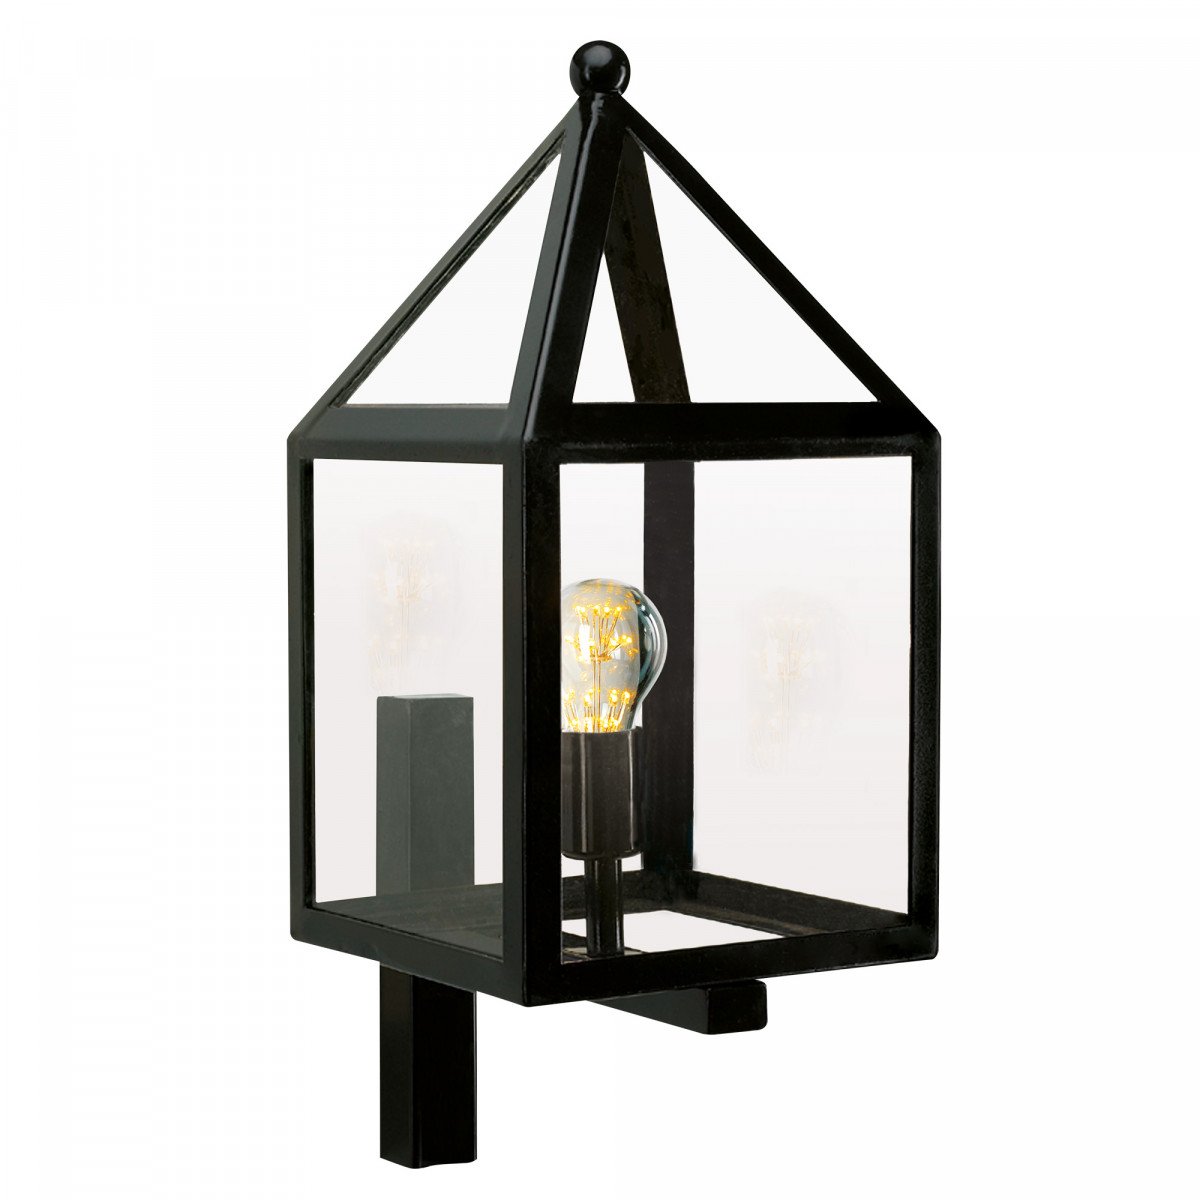 Zwarte wandlamp voor buiten zwart rvs frame en wandsteun, heldere beglazing, huis model,  gooise stijl klassiek moderne buitenverlichting